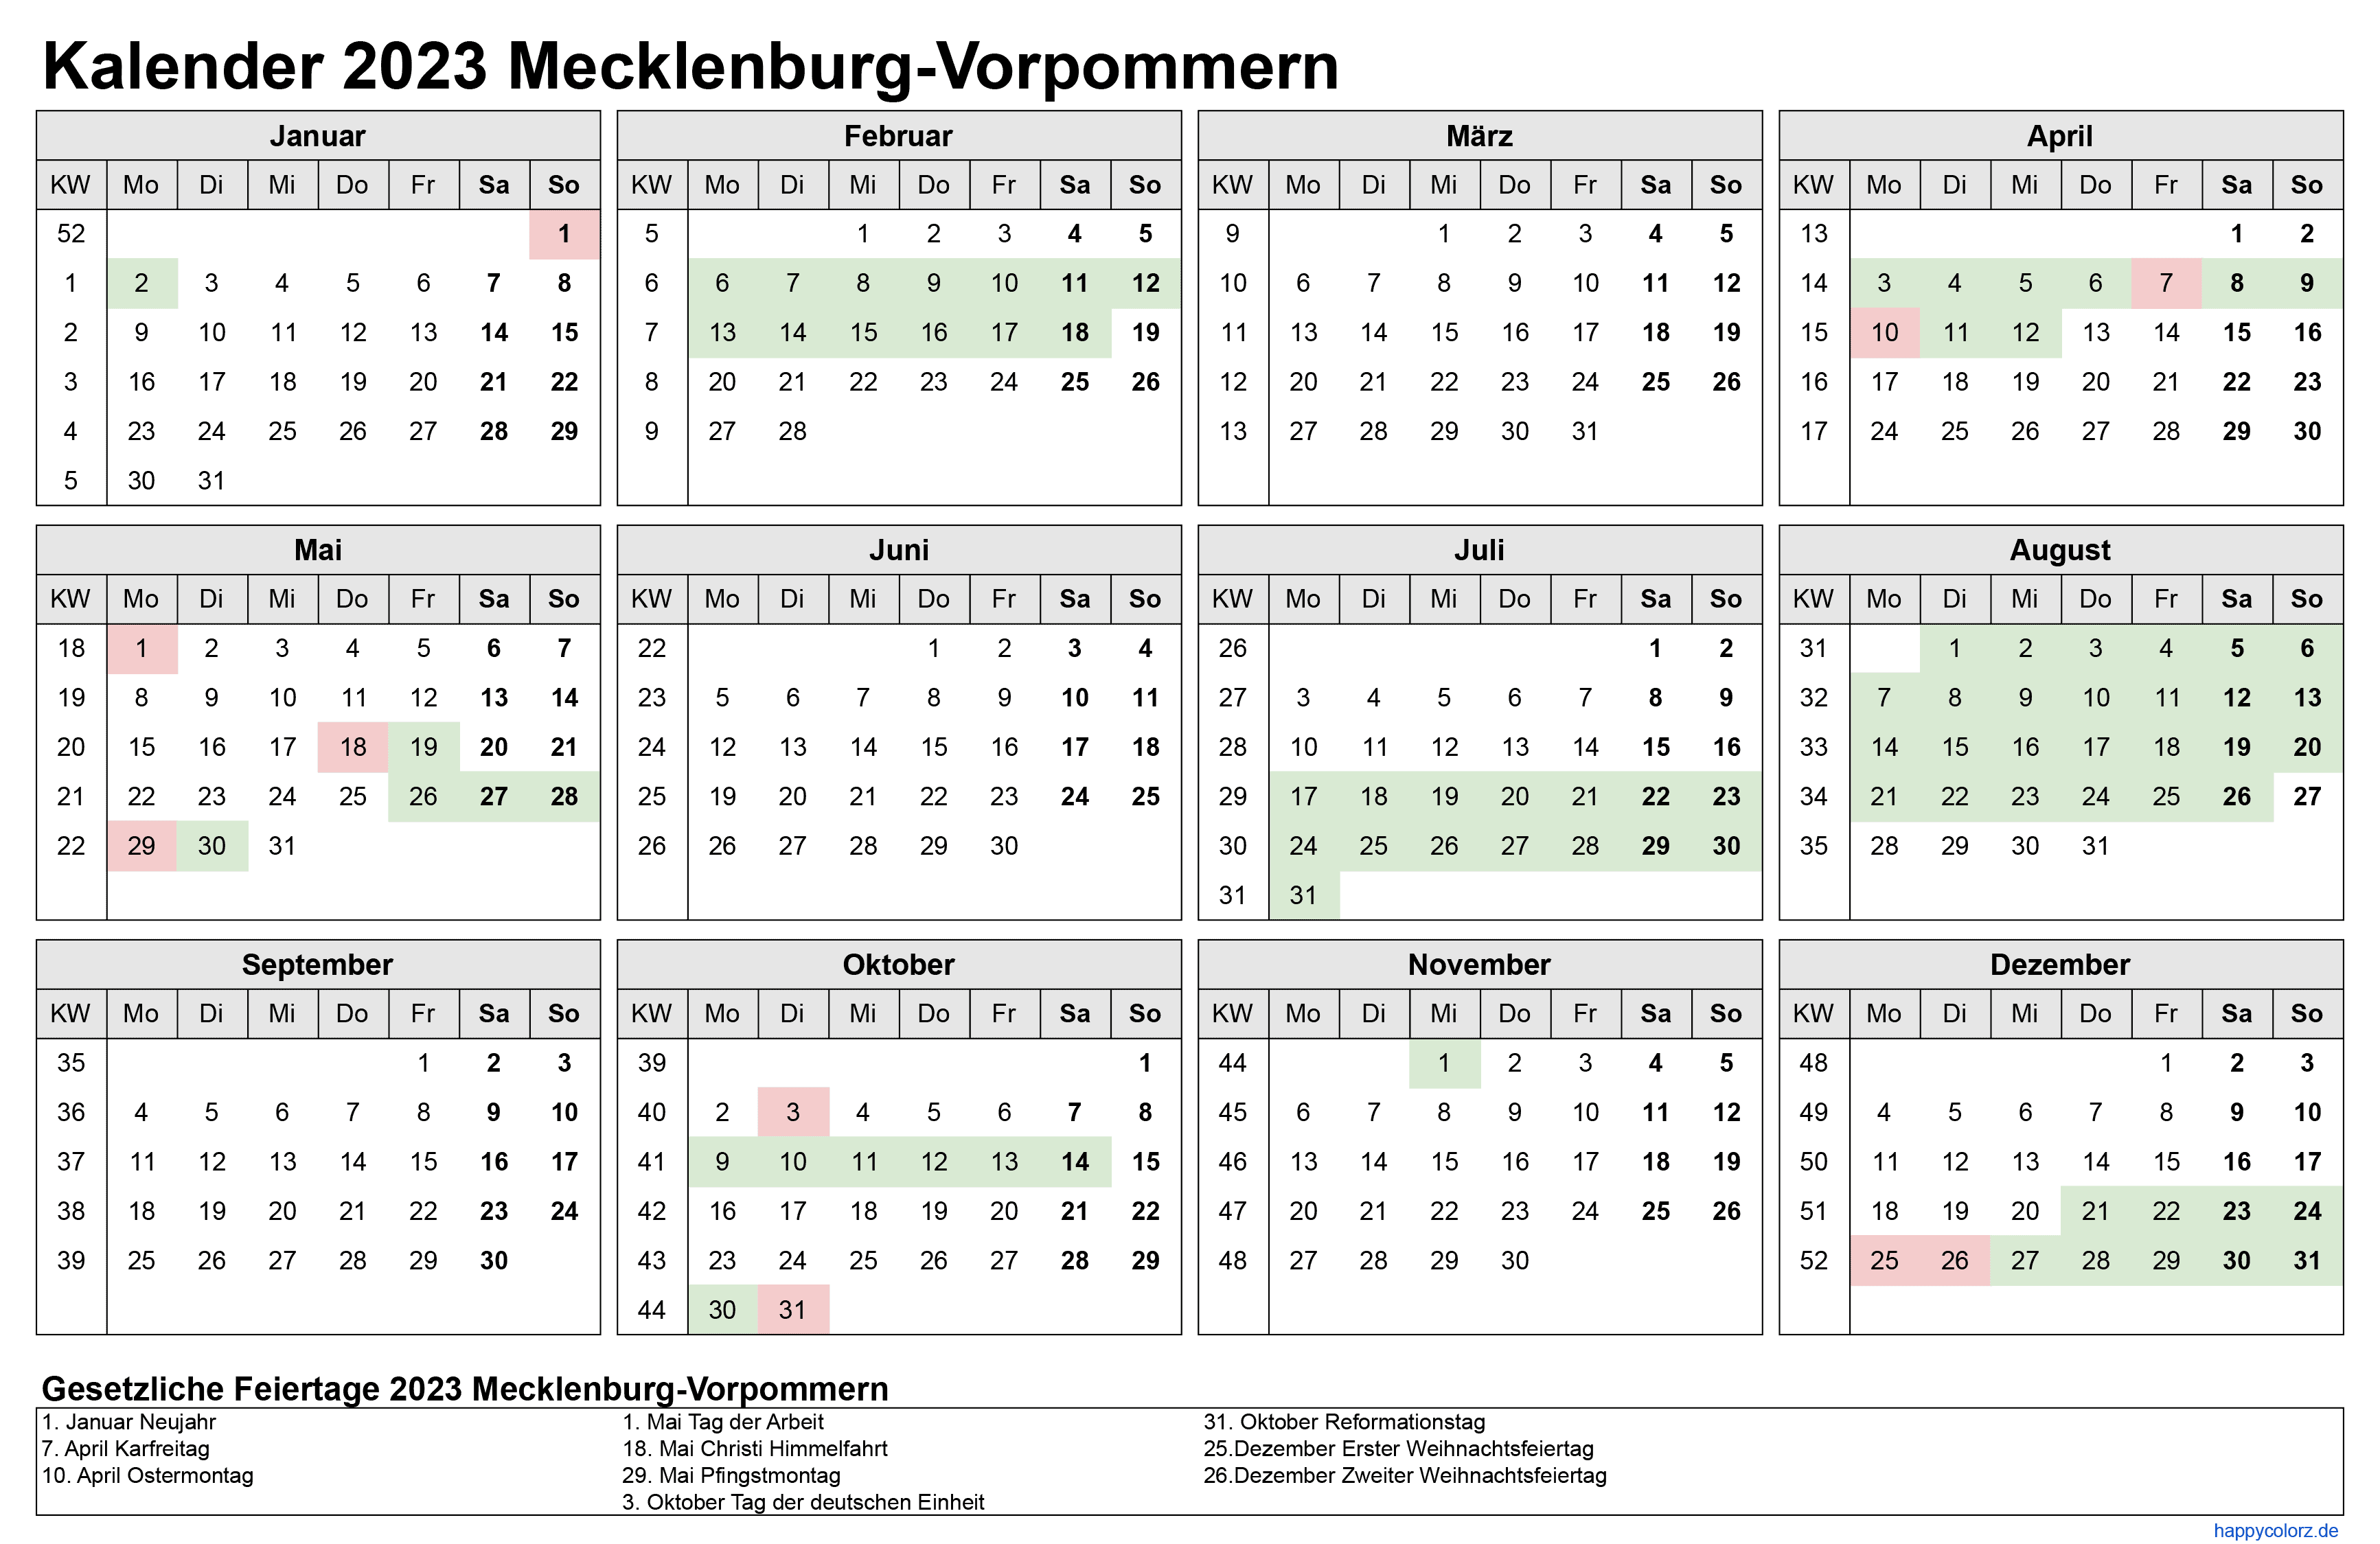 Kalender 2023 Mecklenburg-Vorpommern zum Ausdrucken